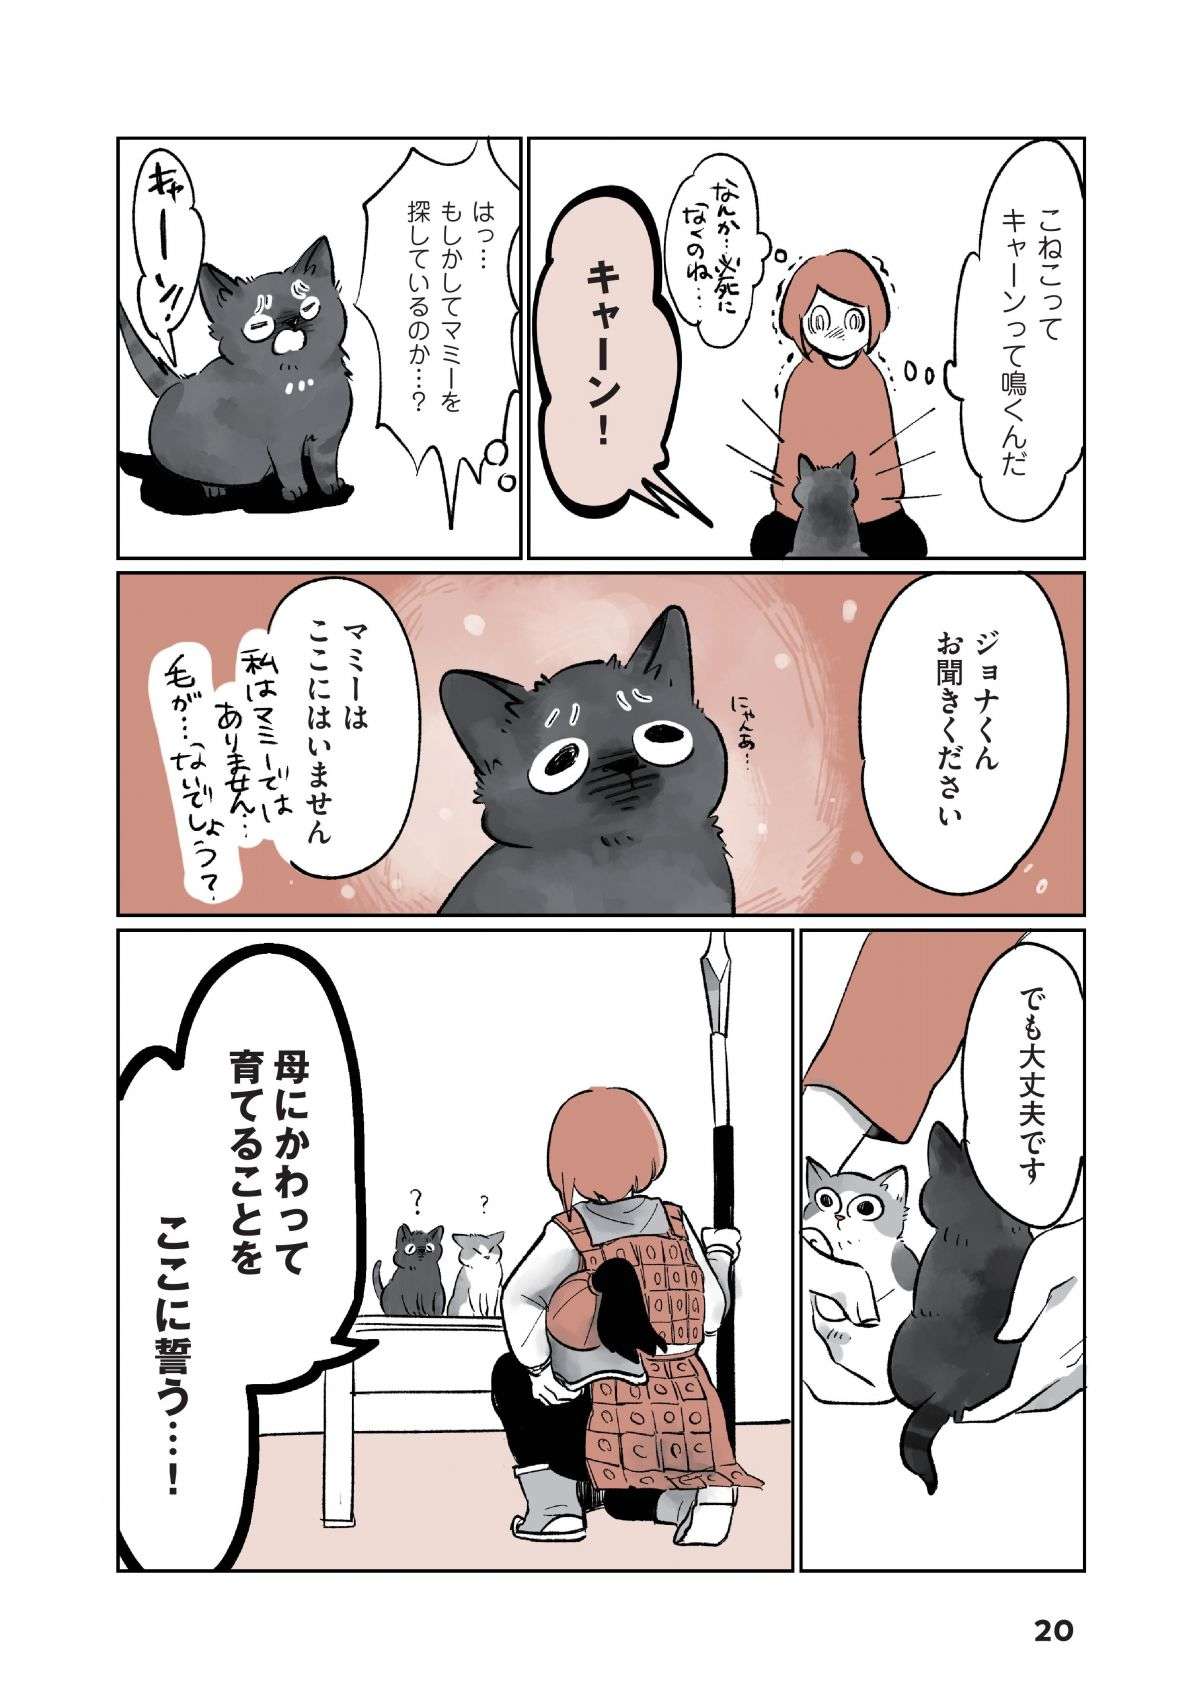 「ちまっ」ヨチヨチ歩く2匹の子猫が我が家に！  不安も吹き飛ぶ「衝撃のかわいさ」／こねこのドレイ koneko_dorei2-5.jpg